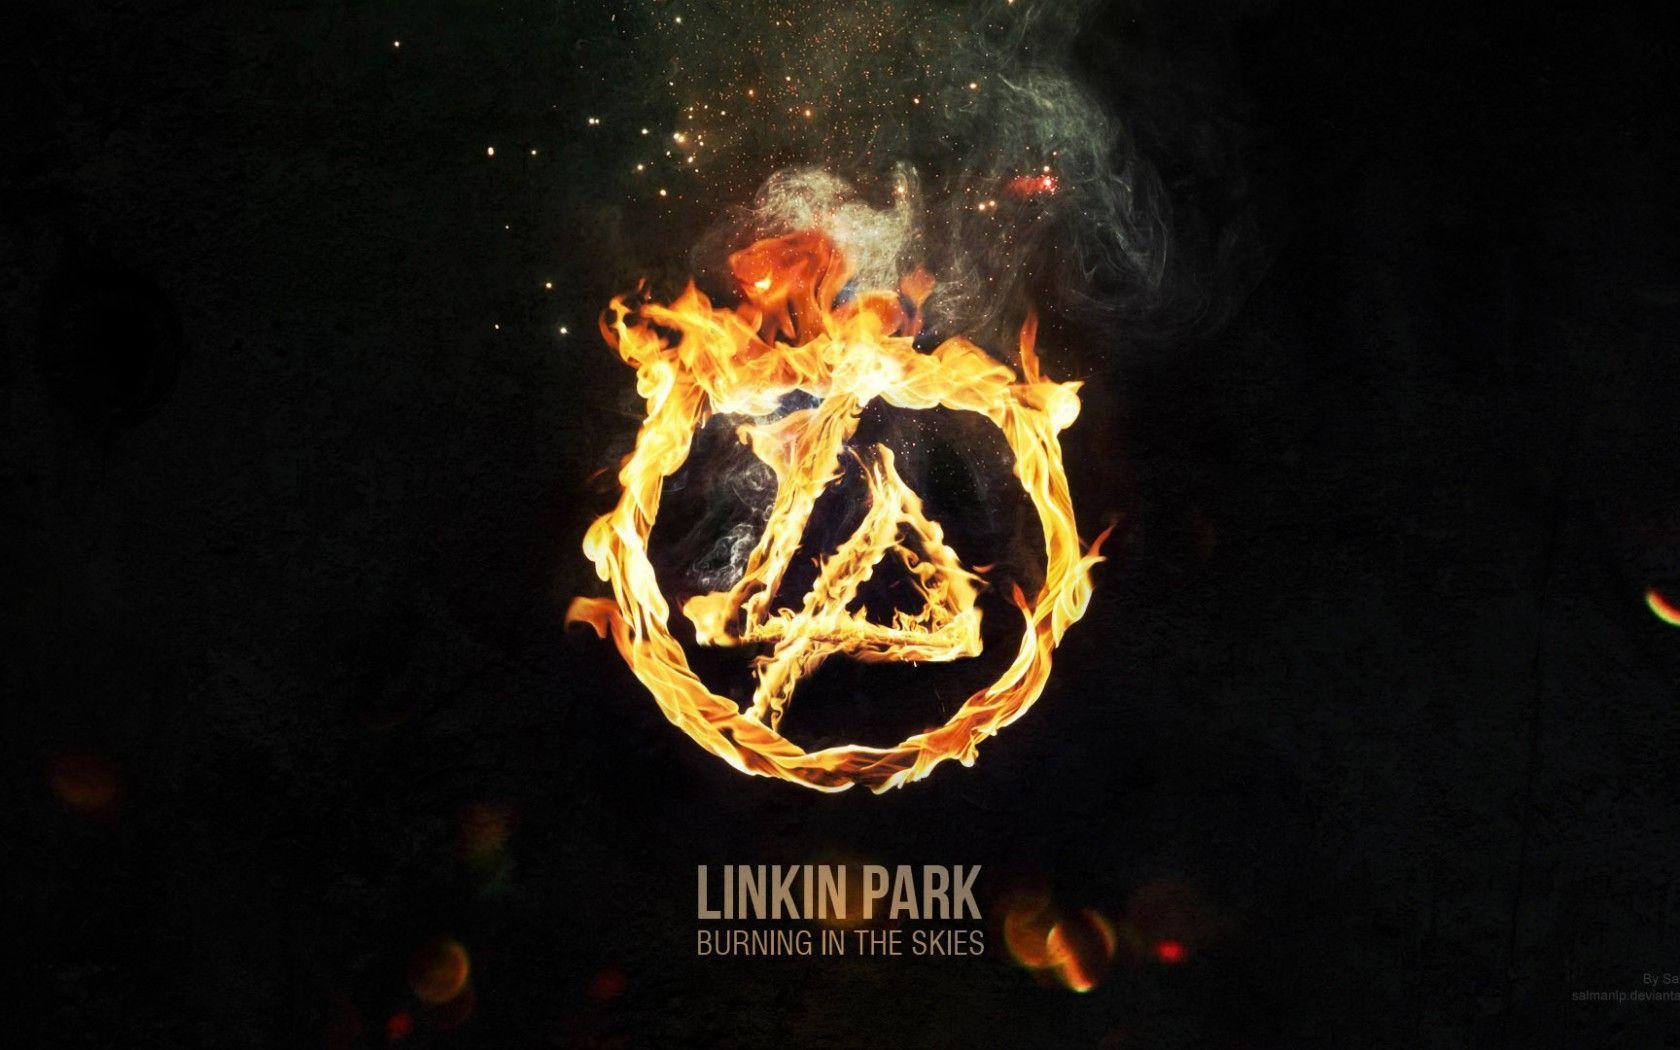 Linkin Park 2014 Fire Logo Wallpaper Wide or HD. Digital Art